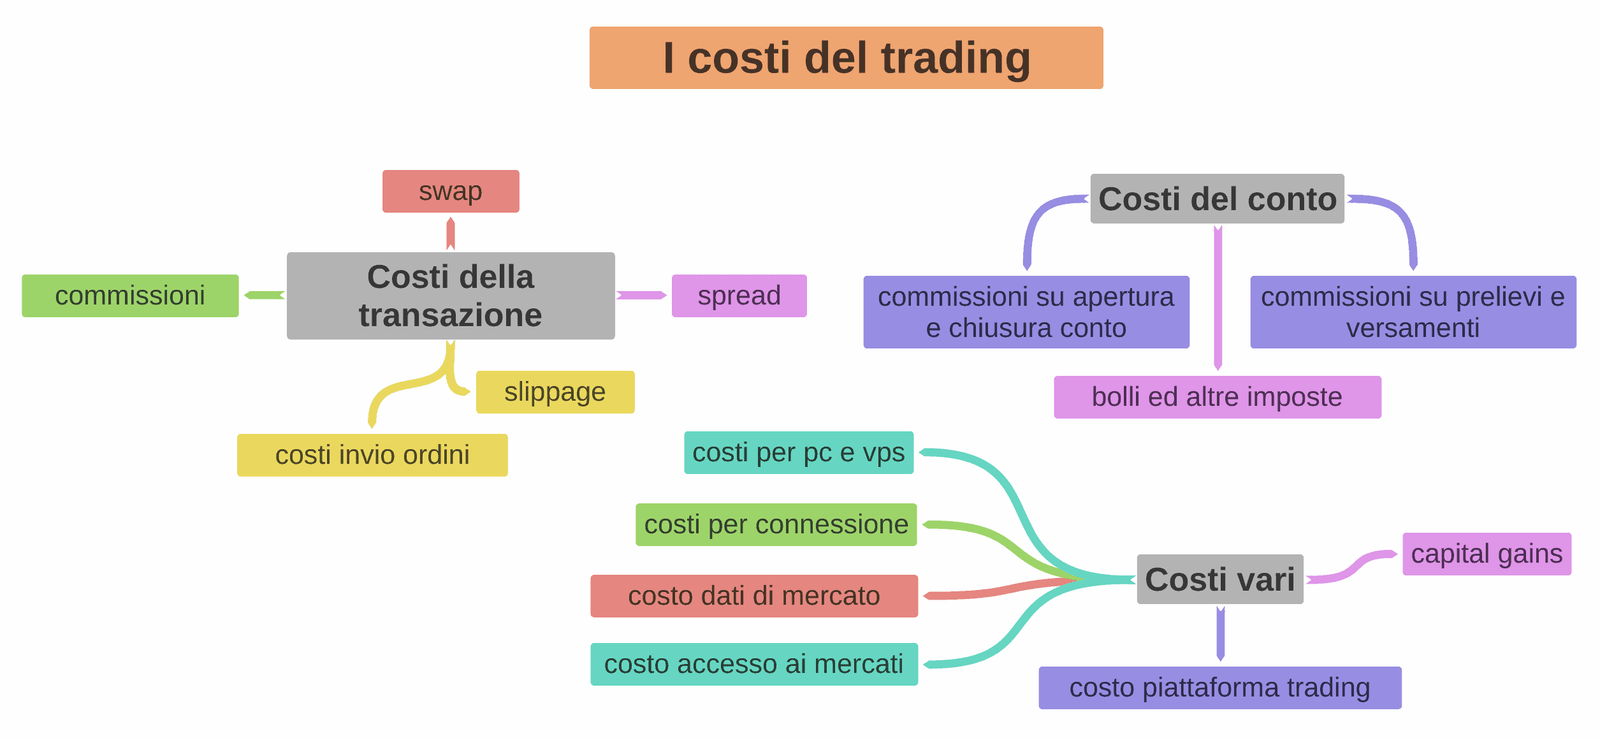 i costi del trading: mappa di tutti i costi